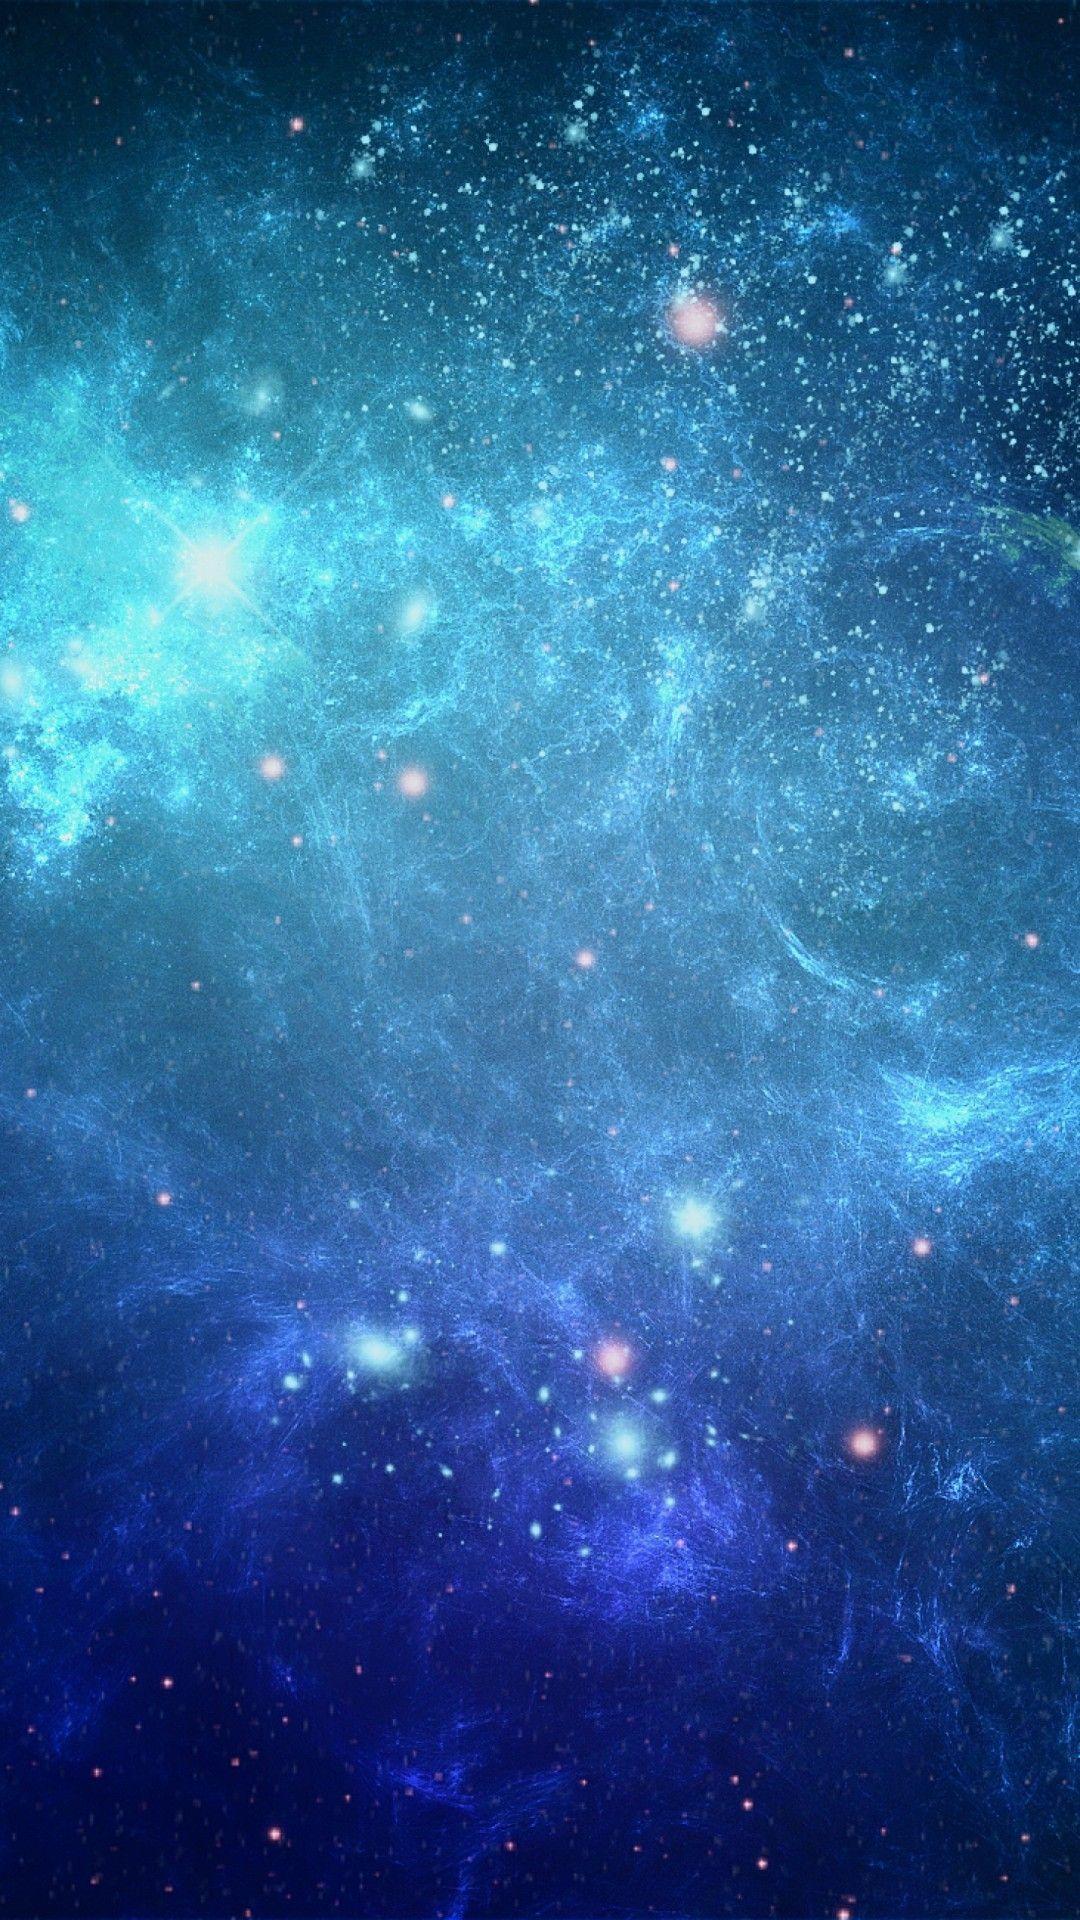 Blue Galaxy là một chủ đề rất đặc biệt và hấp dẫn cho những người yêu thích vũ trụ. Những bức ảnh Blue Galaxy đều có màu sắc xanh đặc trưng và vô cùng độc đáo. Hãy cùng khám phá thế giới xanh ngắt của Blue Galaxy bằng những bức ảnh tuyệt vời này.